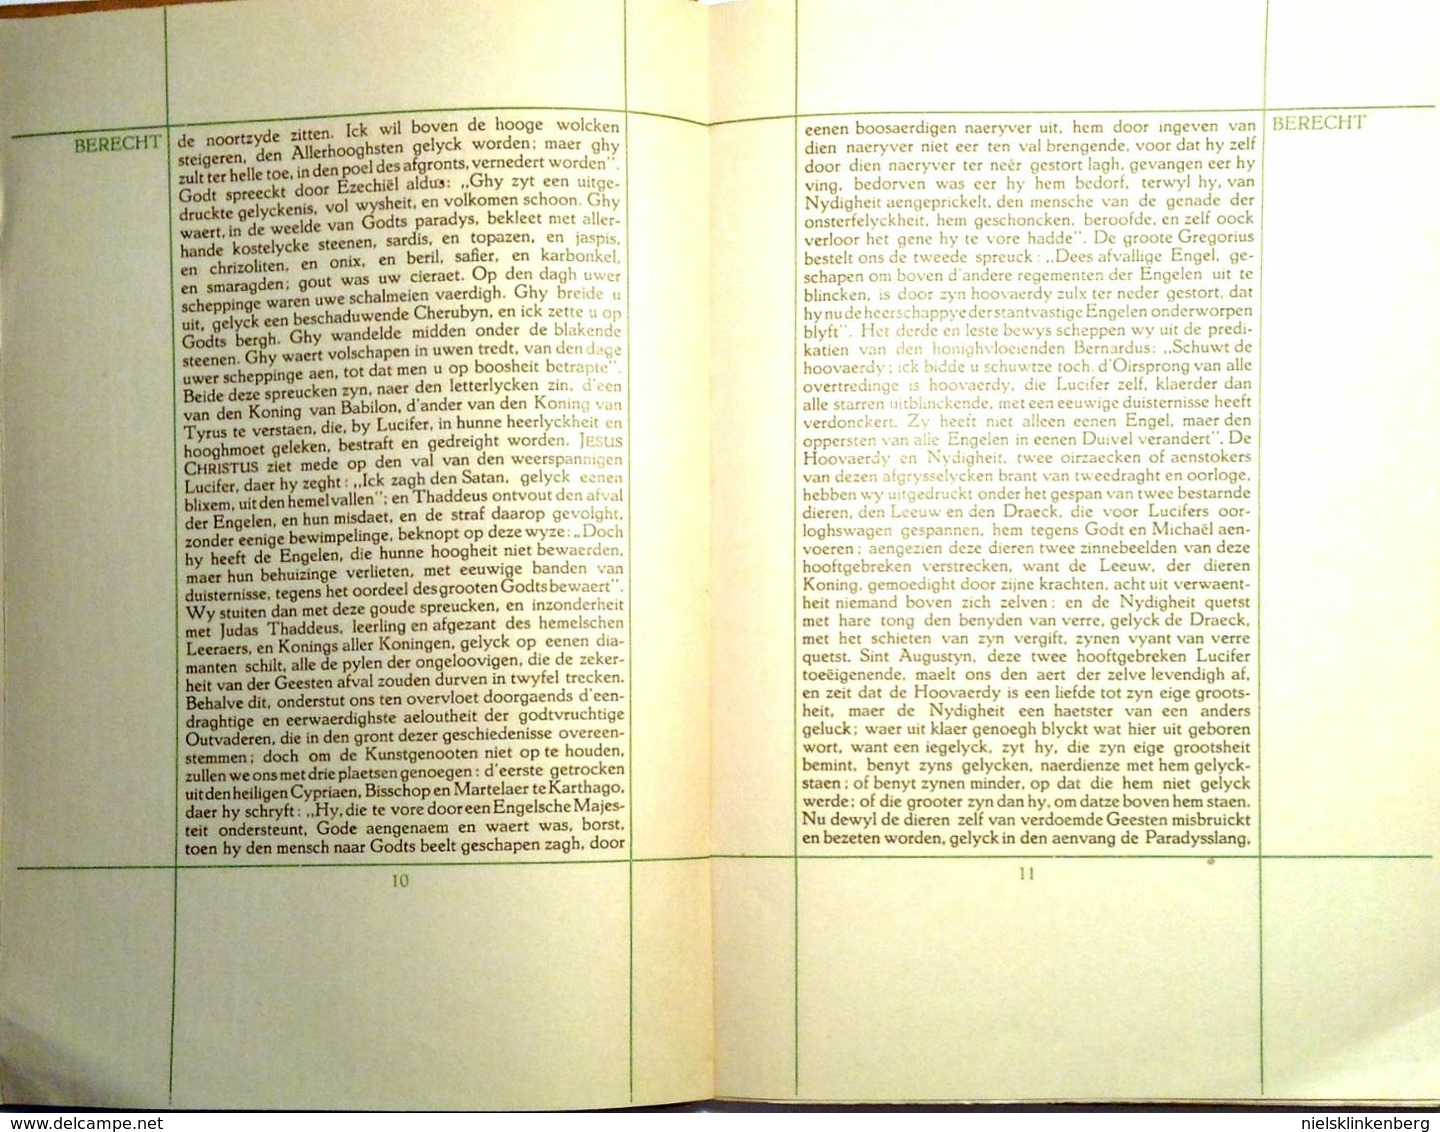 VONDEL, JOOST VAN DEN Lucifer. Treurspel. Praecipitemque immani turbine adegit. Maastricht, Leiter-Nypels, 1922.